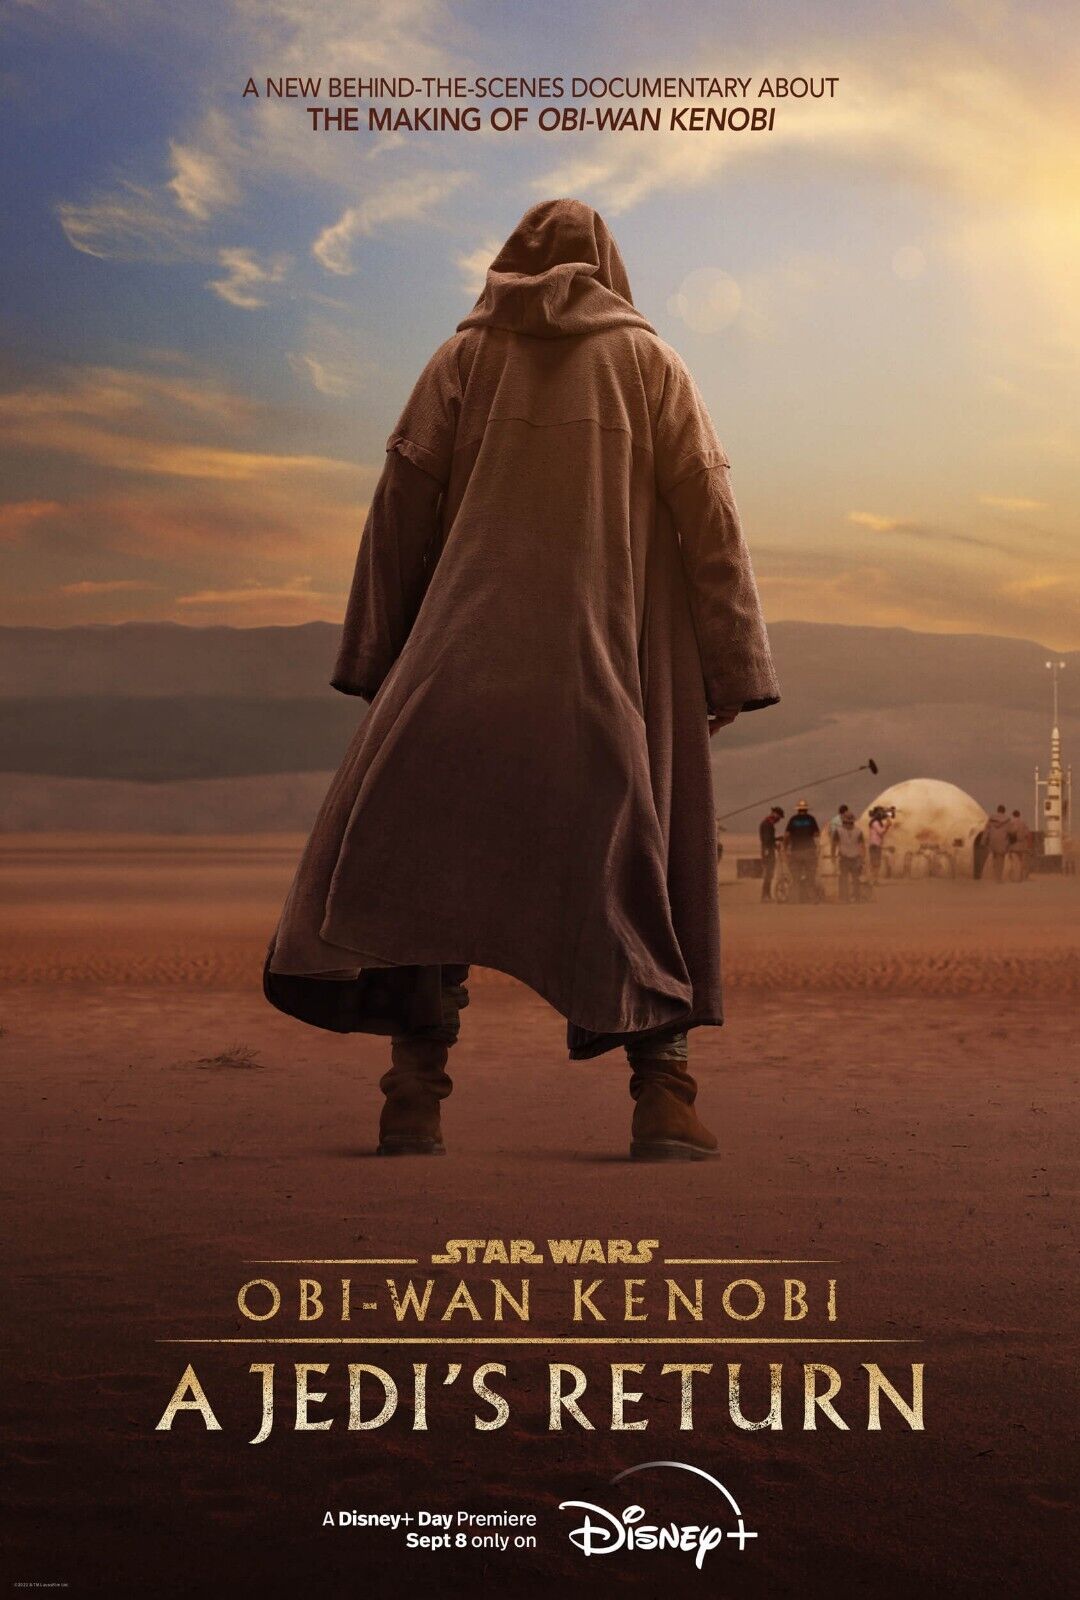 Star Wars - Obi-wan Kenobi A Jedi's Return -11"x17" Tv Series Poster Print #1